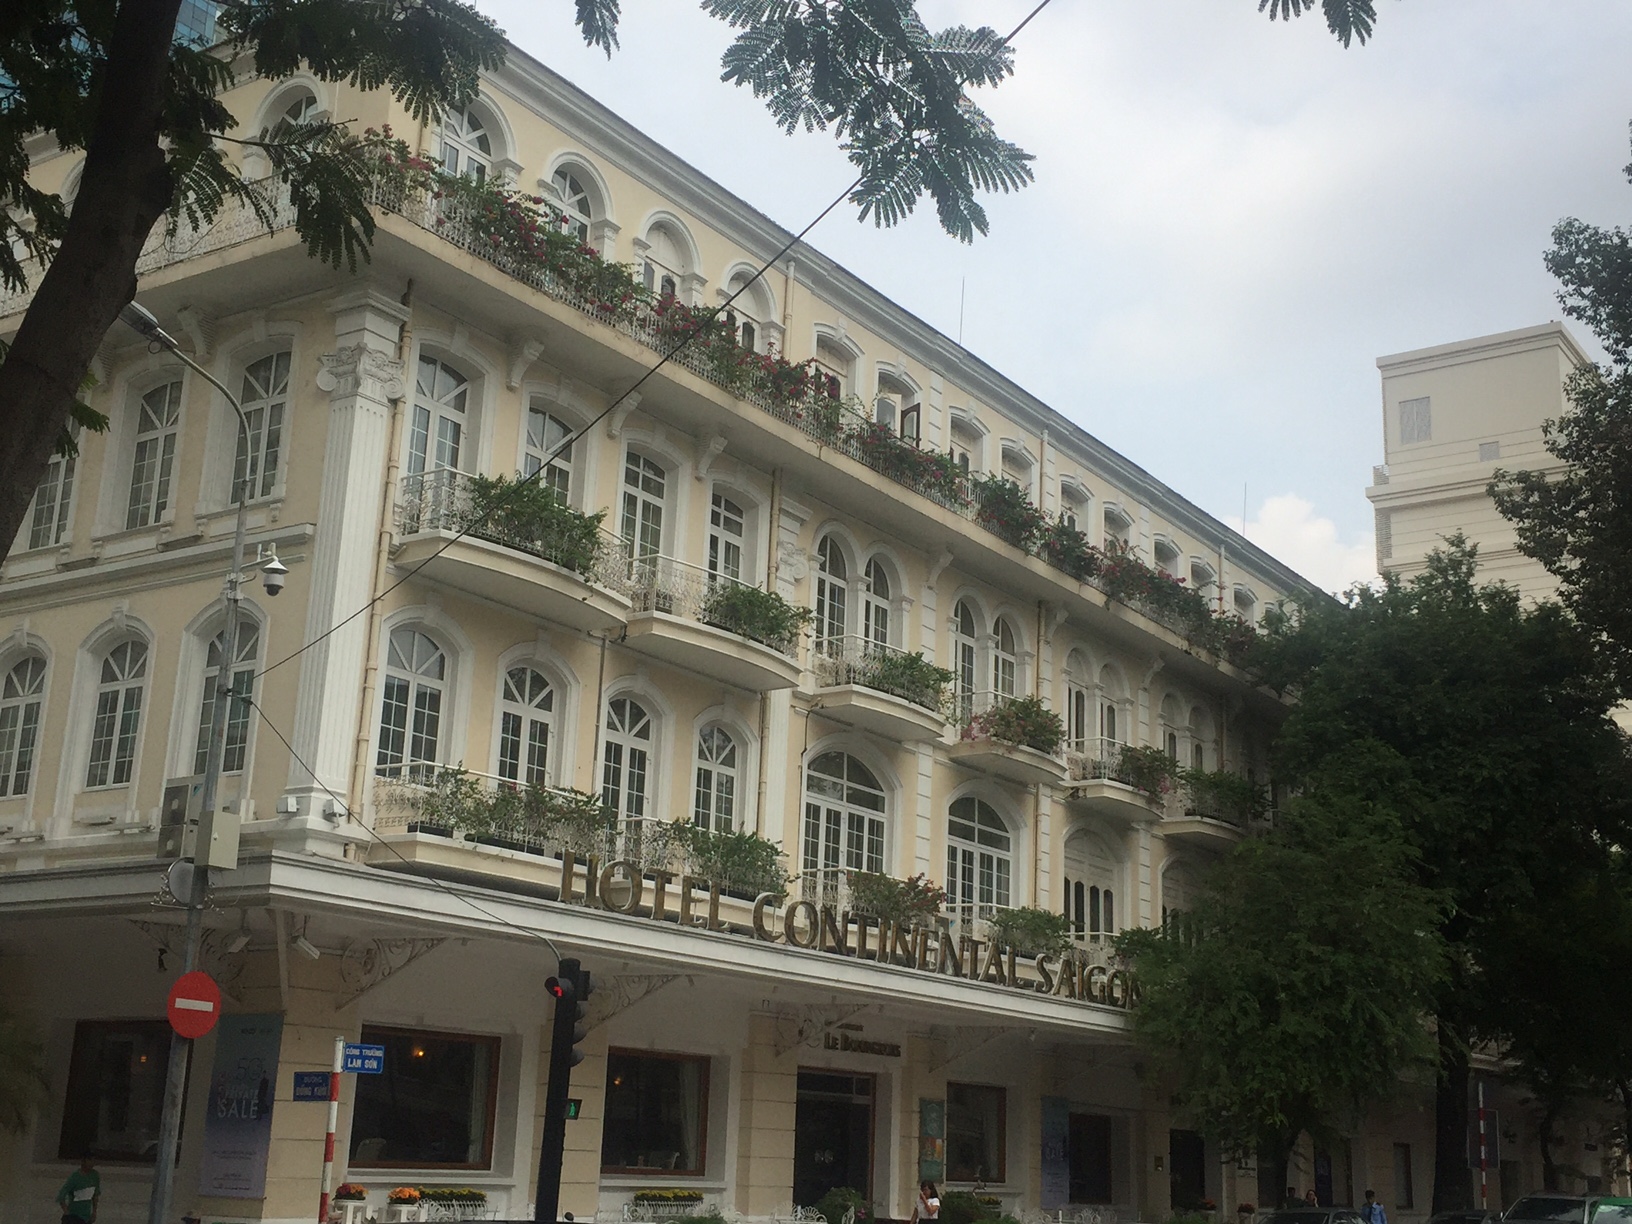 Continental Hotel, Saigon: Wo der stille Amerikaner einkehrte